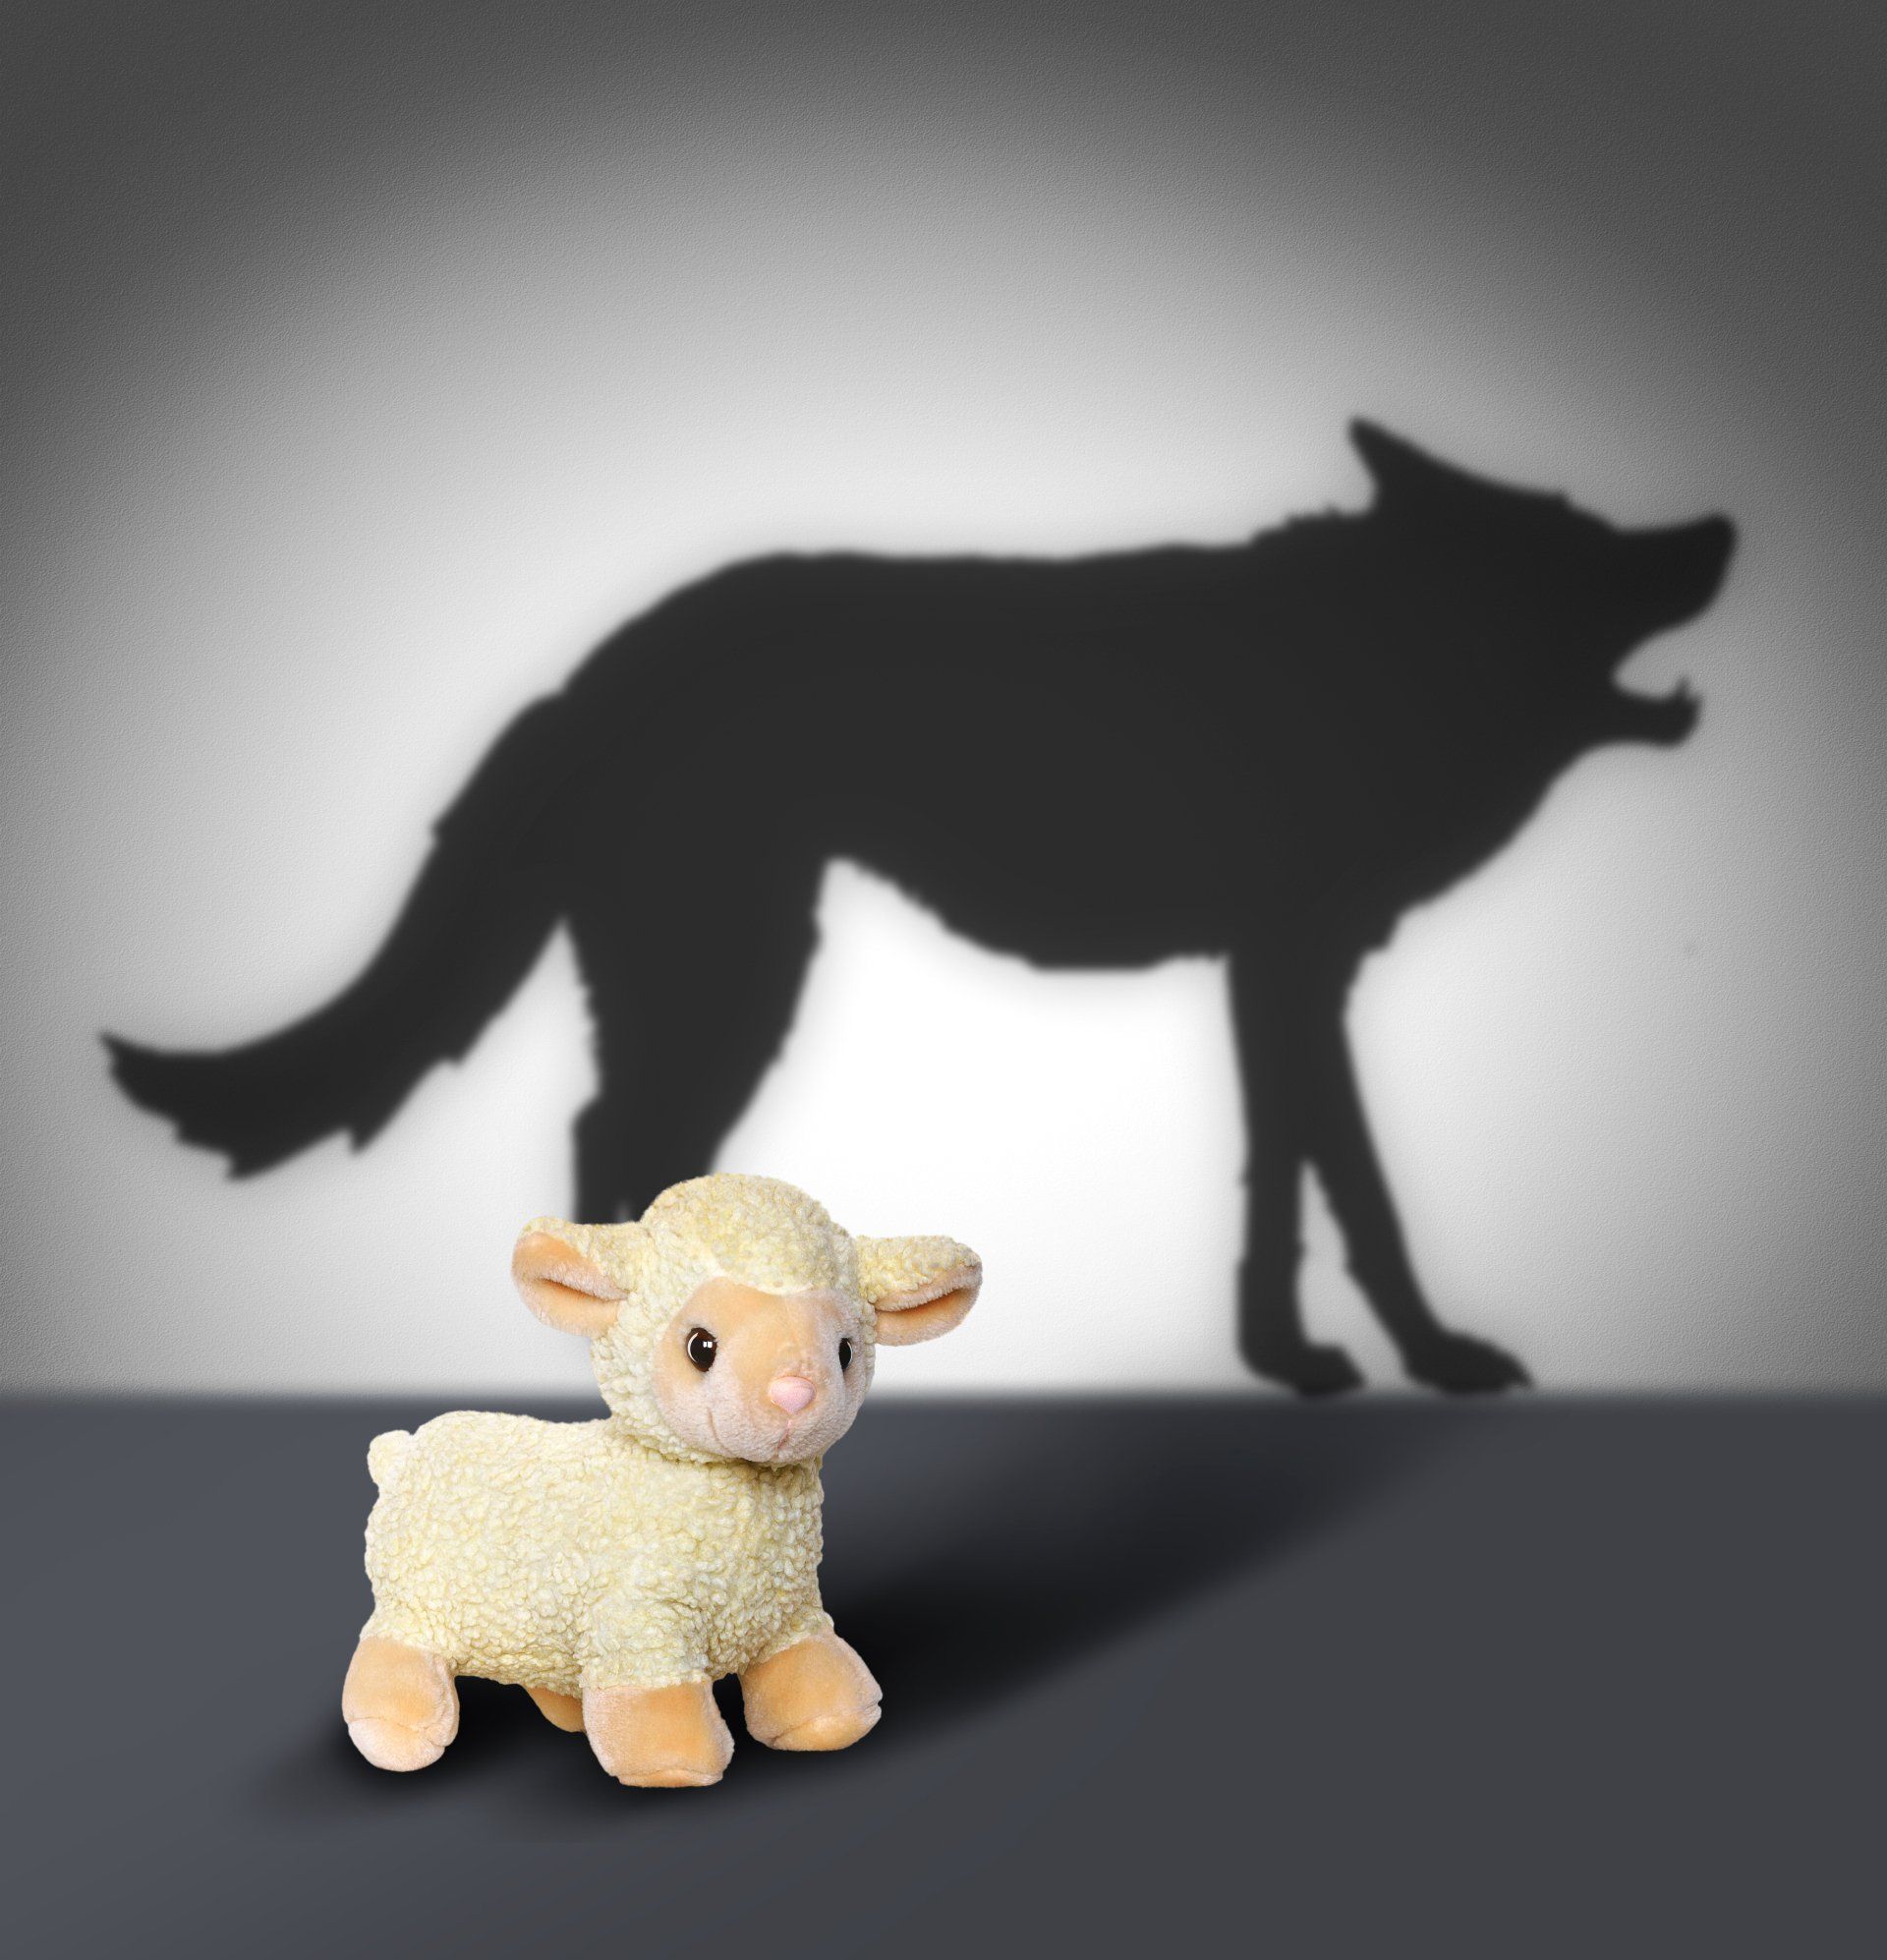 PTSS Voorbij Holistisch Herstel PTSS Trauma Johan Reinhoudt Sheep and Wolf Shadow Concept Graphic